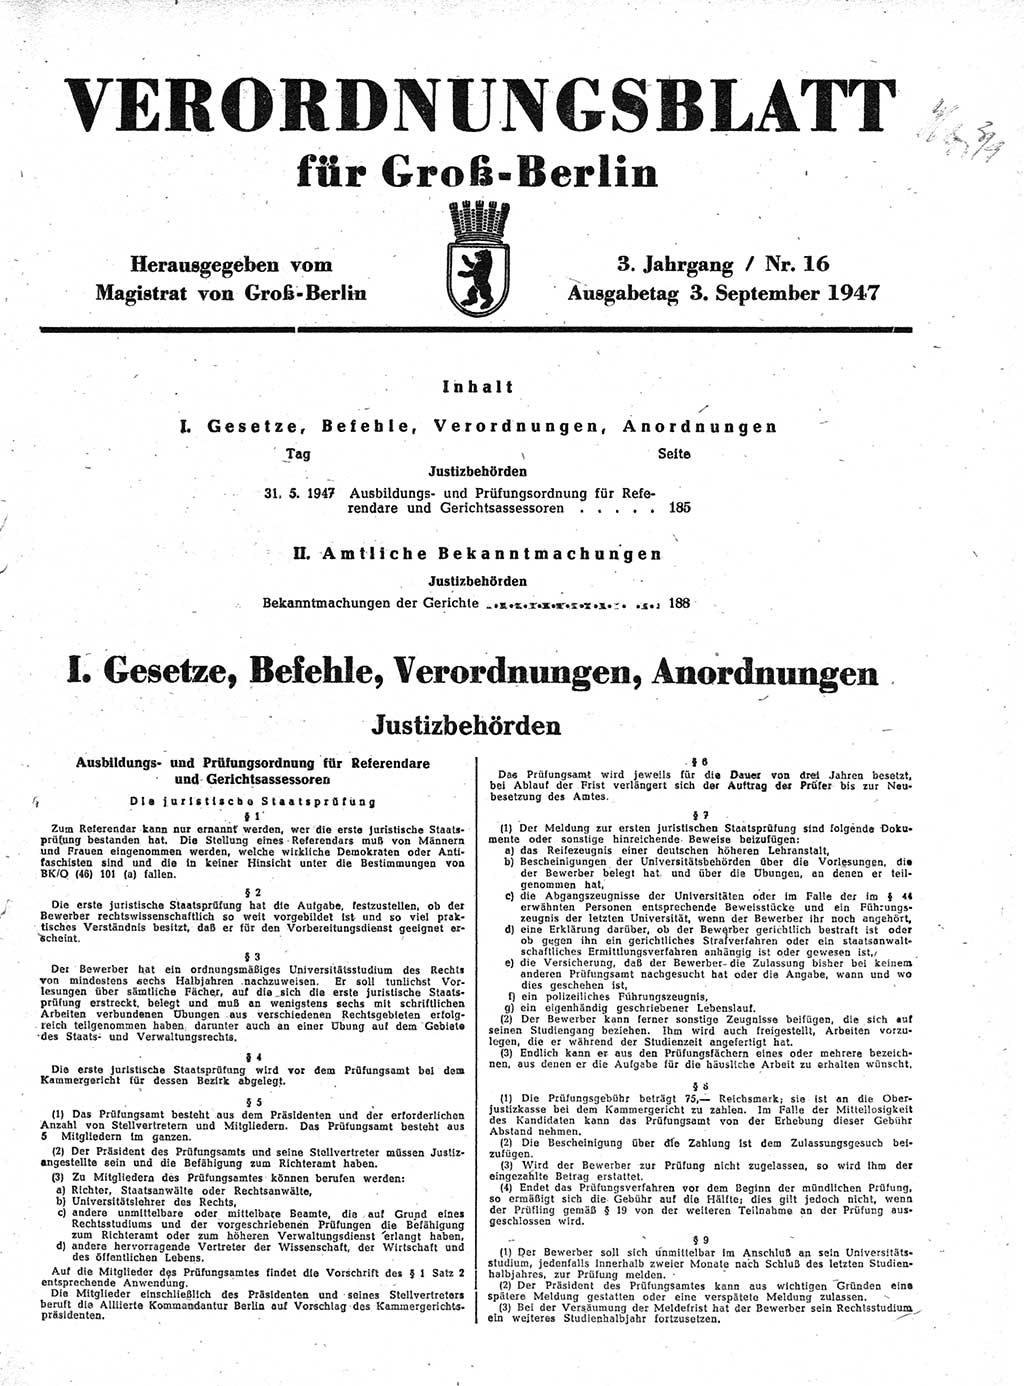 Verordnungsblatt (VOBl.) für Groß-Berlin 1947, Seite 185 (VOBl. Bln. 1947, S. 185)